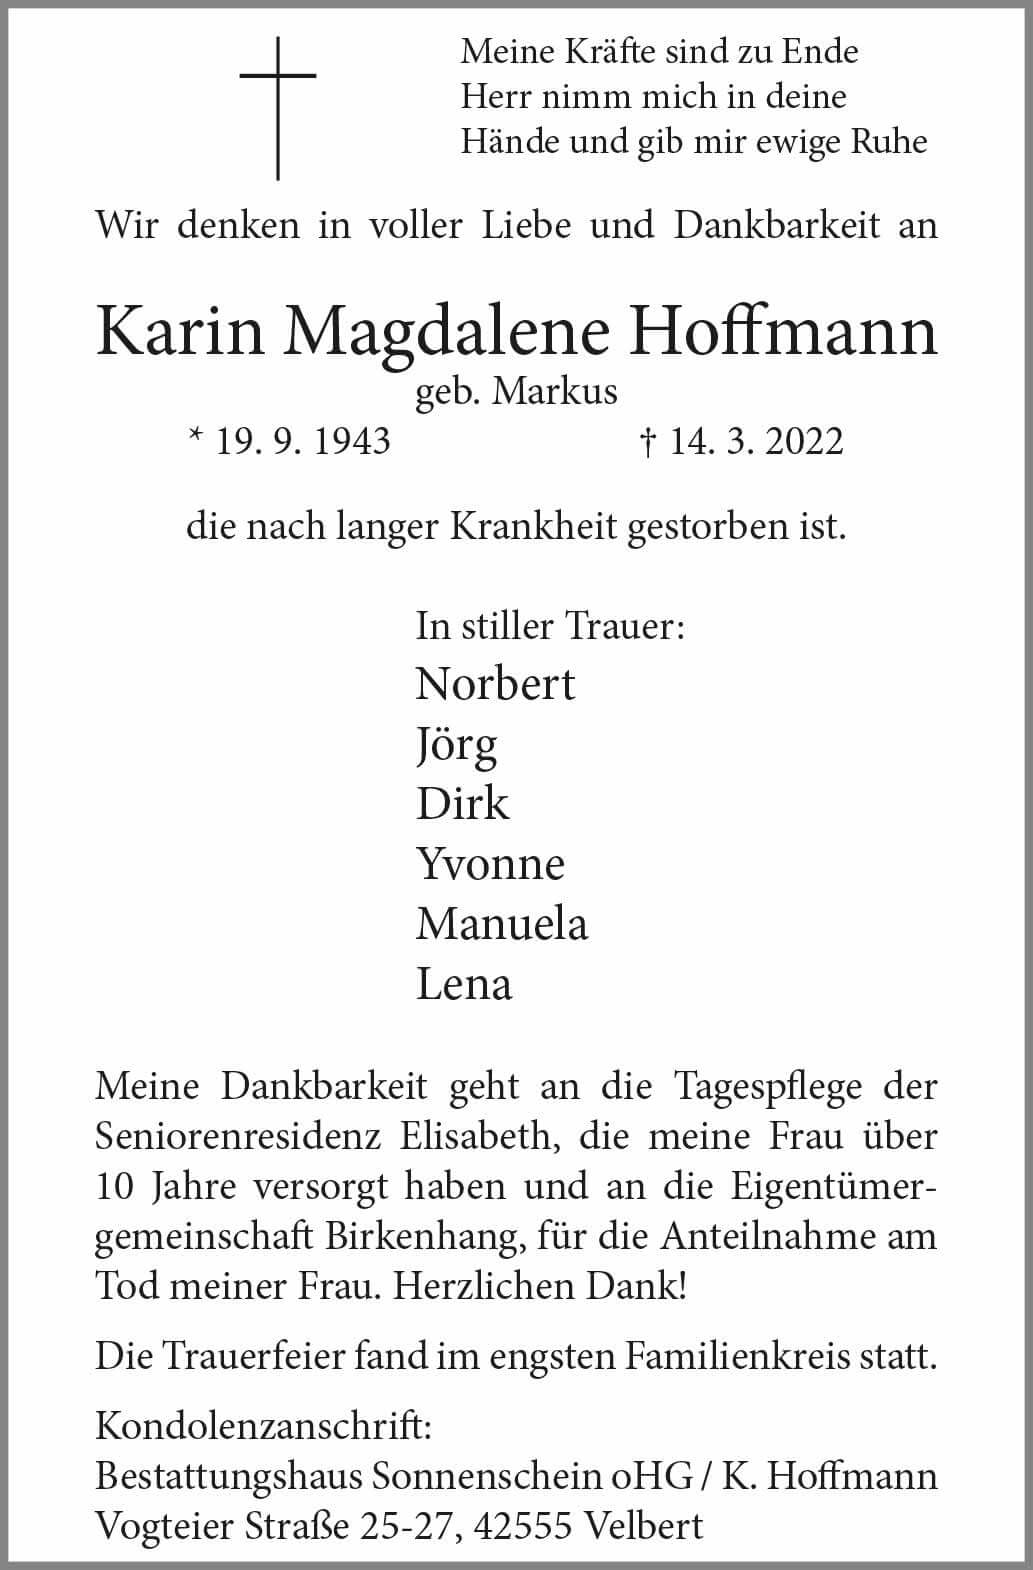 09.04.2022_Hoffmann-Karin-Magdalene.jpg